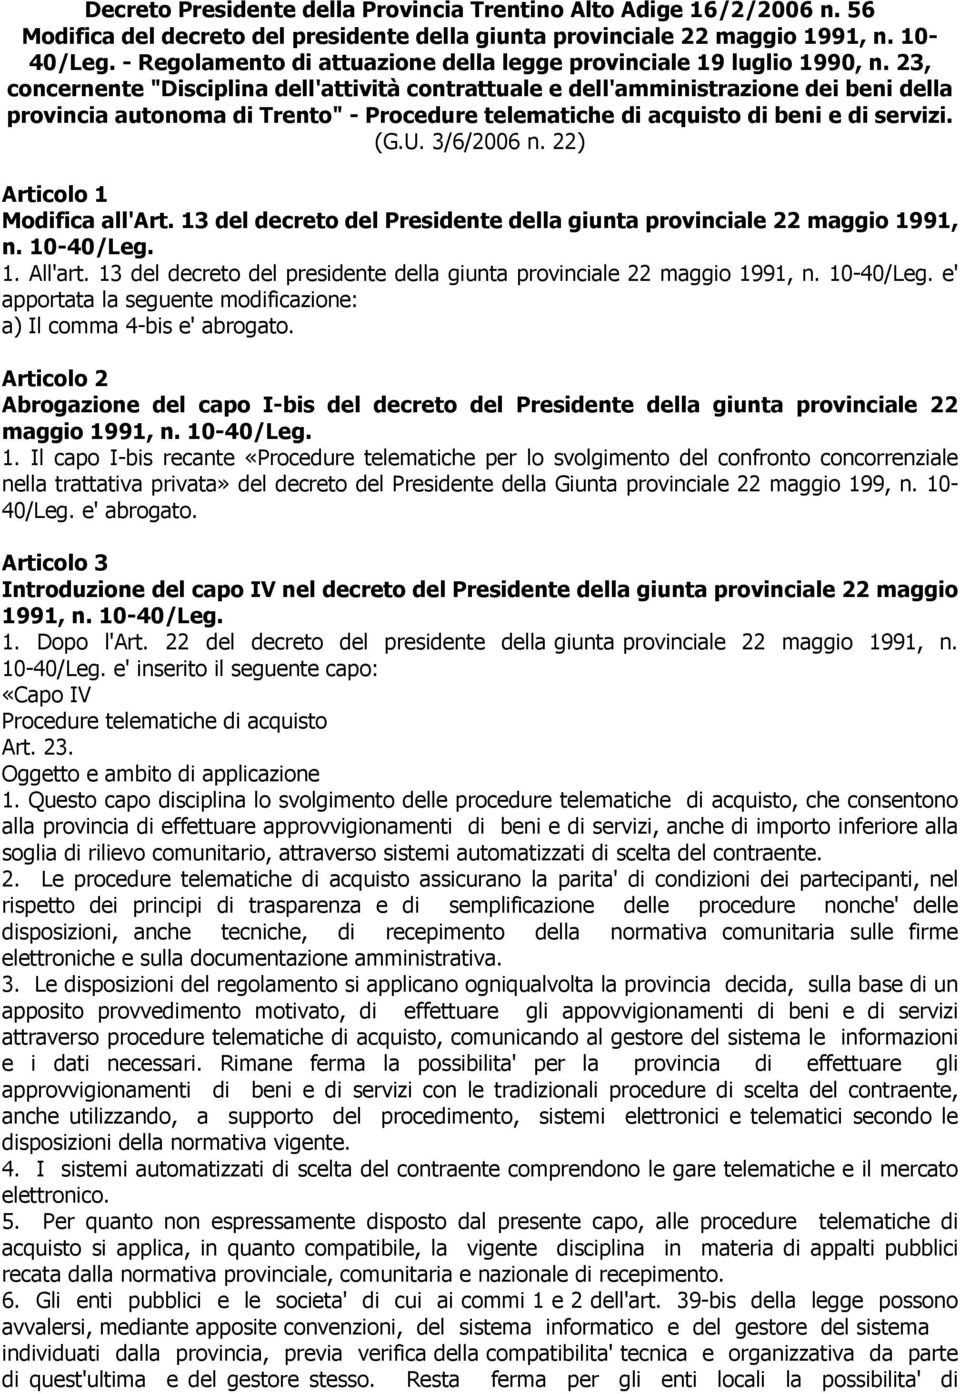 23, concernente "Disciplina dell'attività contrattuale e dell'amministrazione dei beni della provincia autonoma di Trento" - Procedure telematiche di acquisto di beni e di servizi. (G.U. 3/6/2006 n.